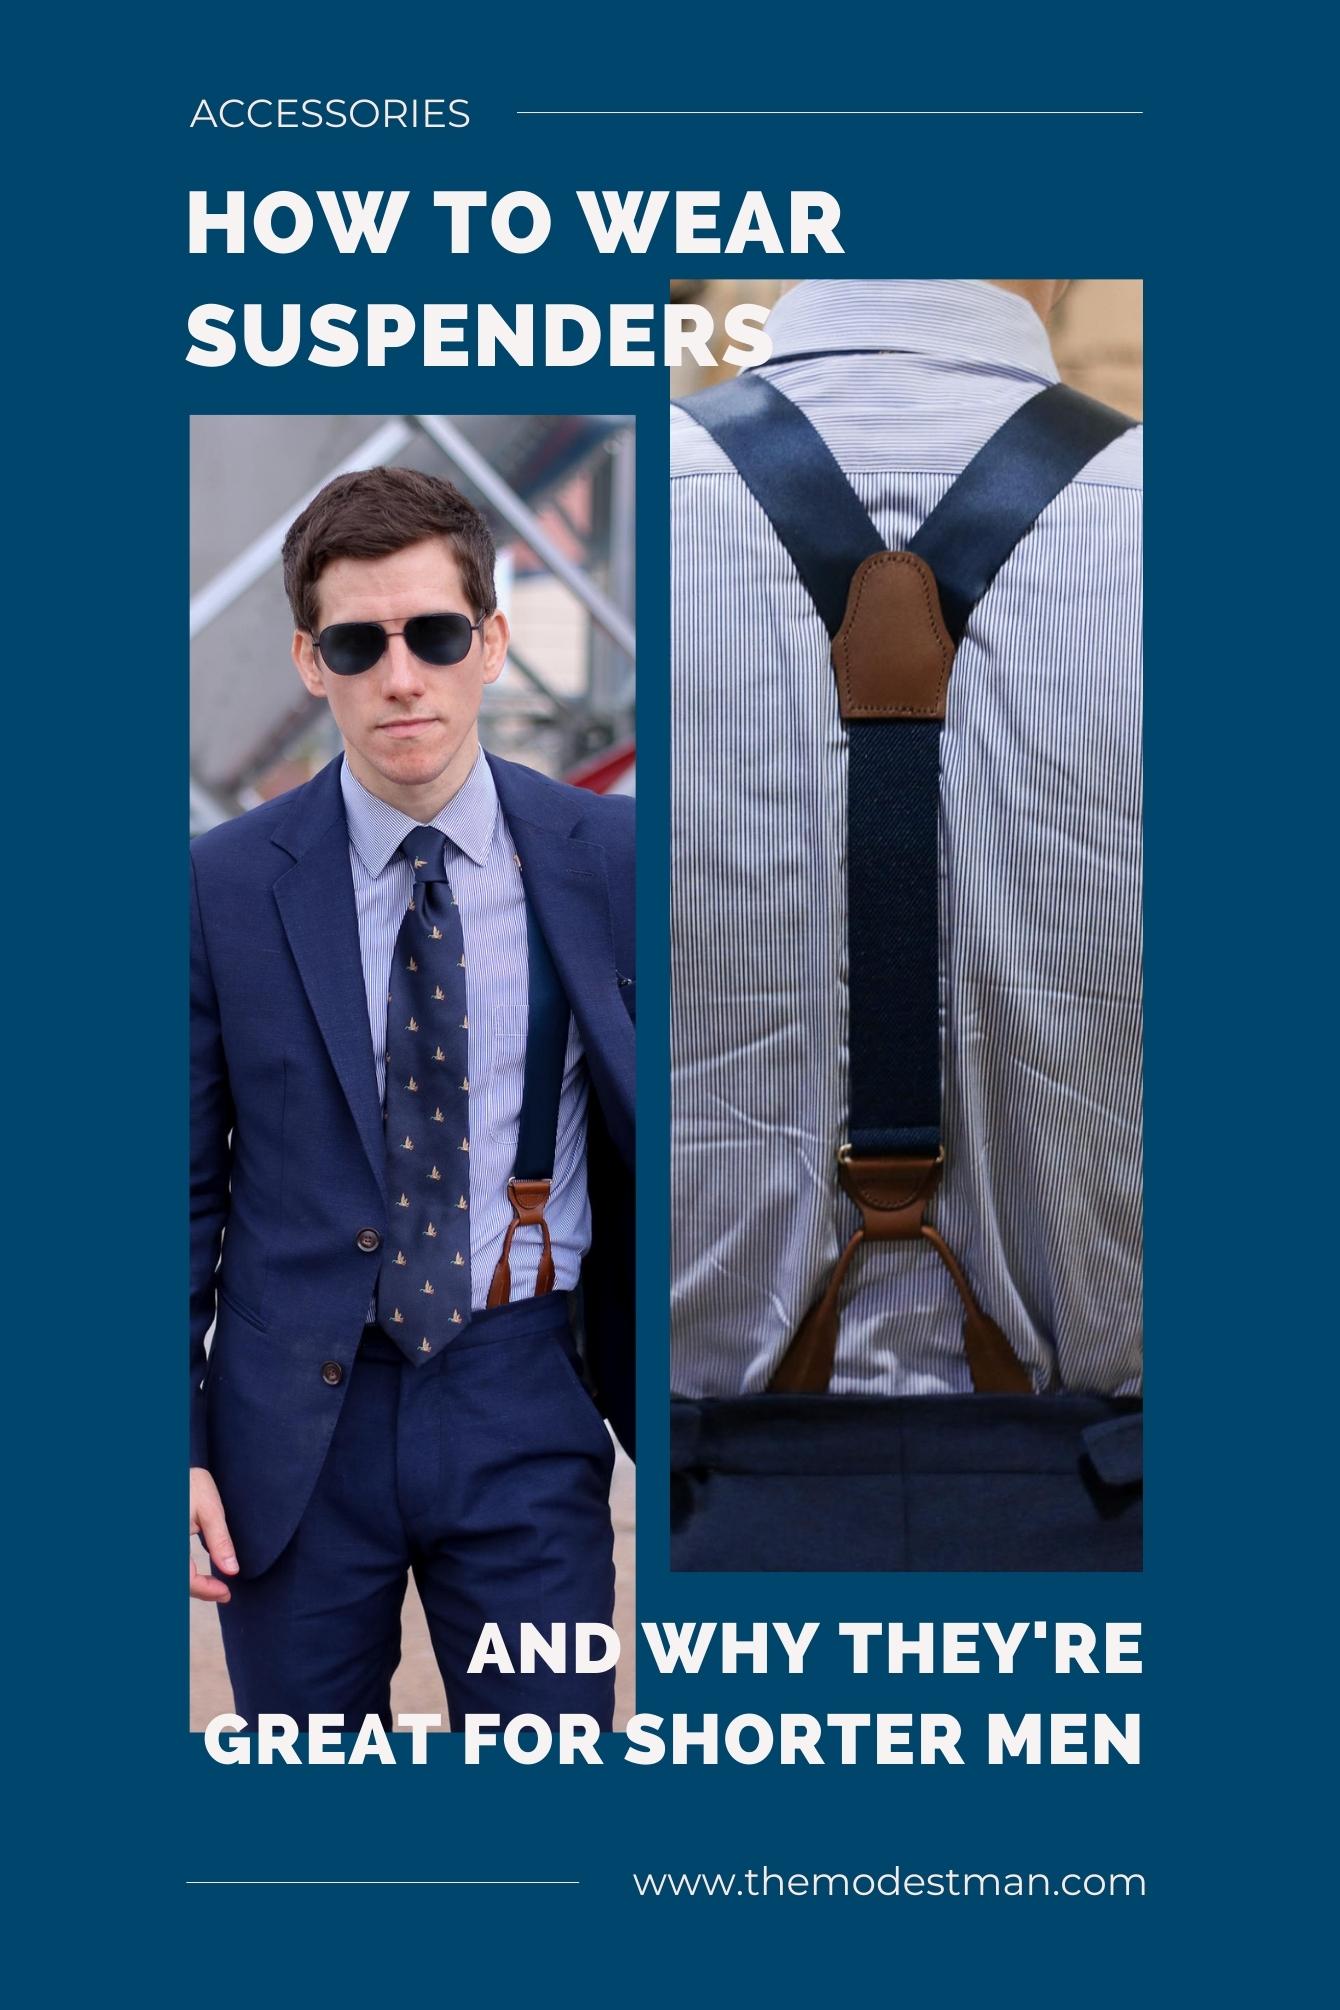 Casual Drop Clip Suspenders